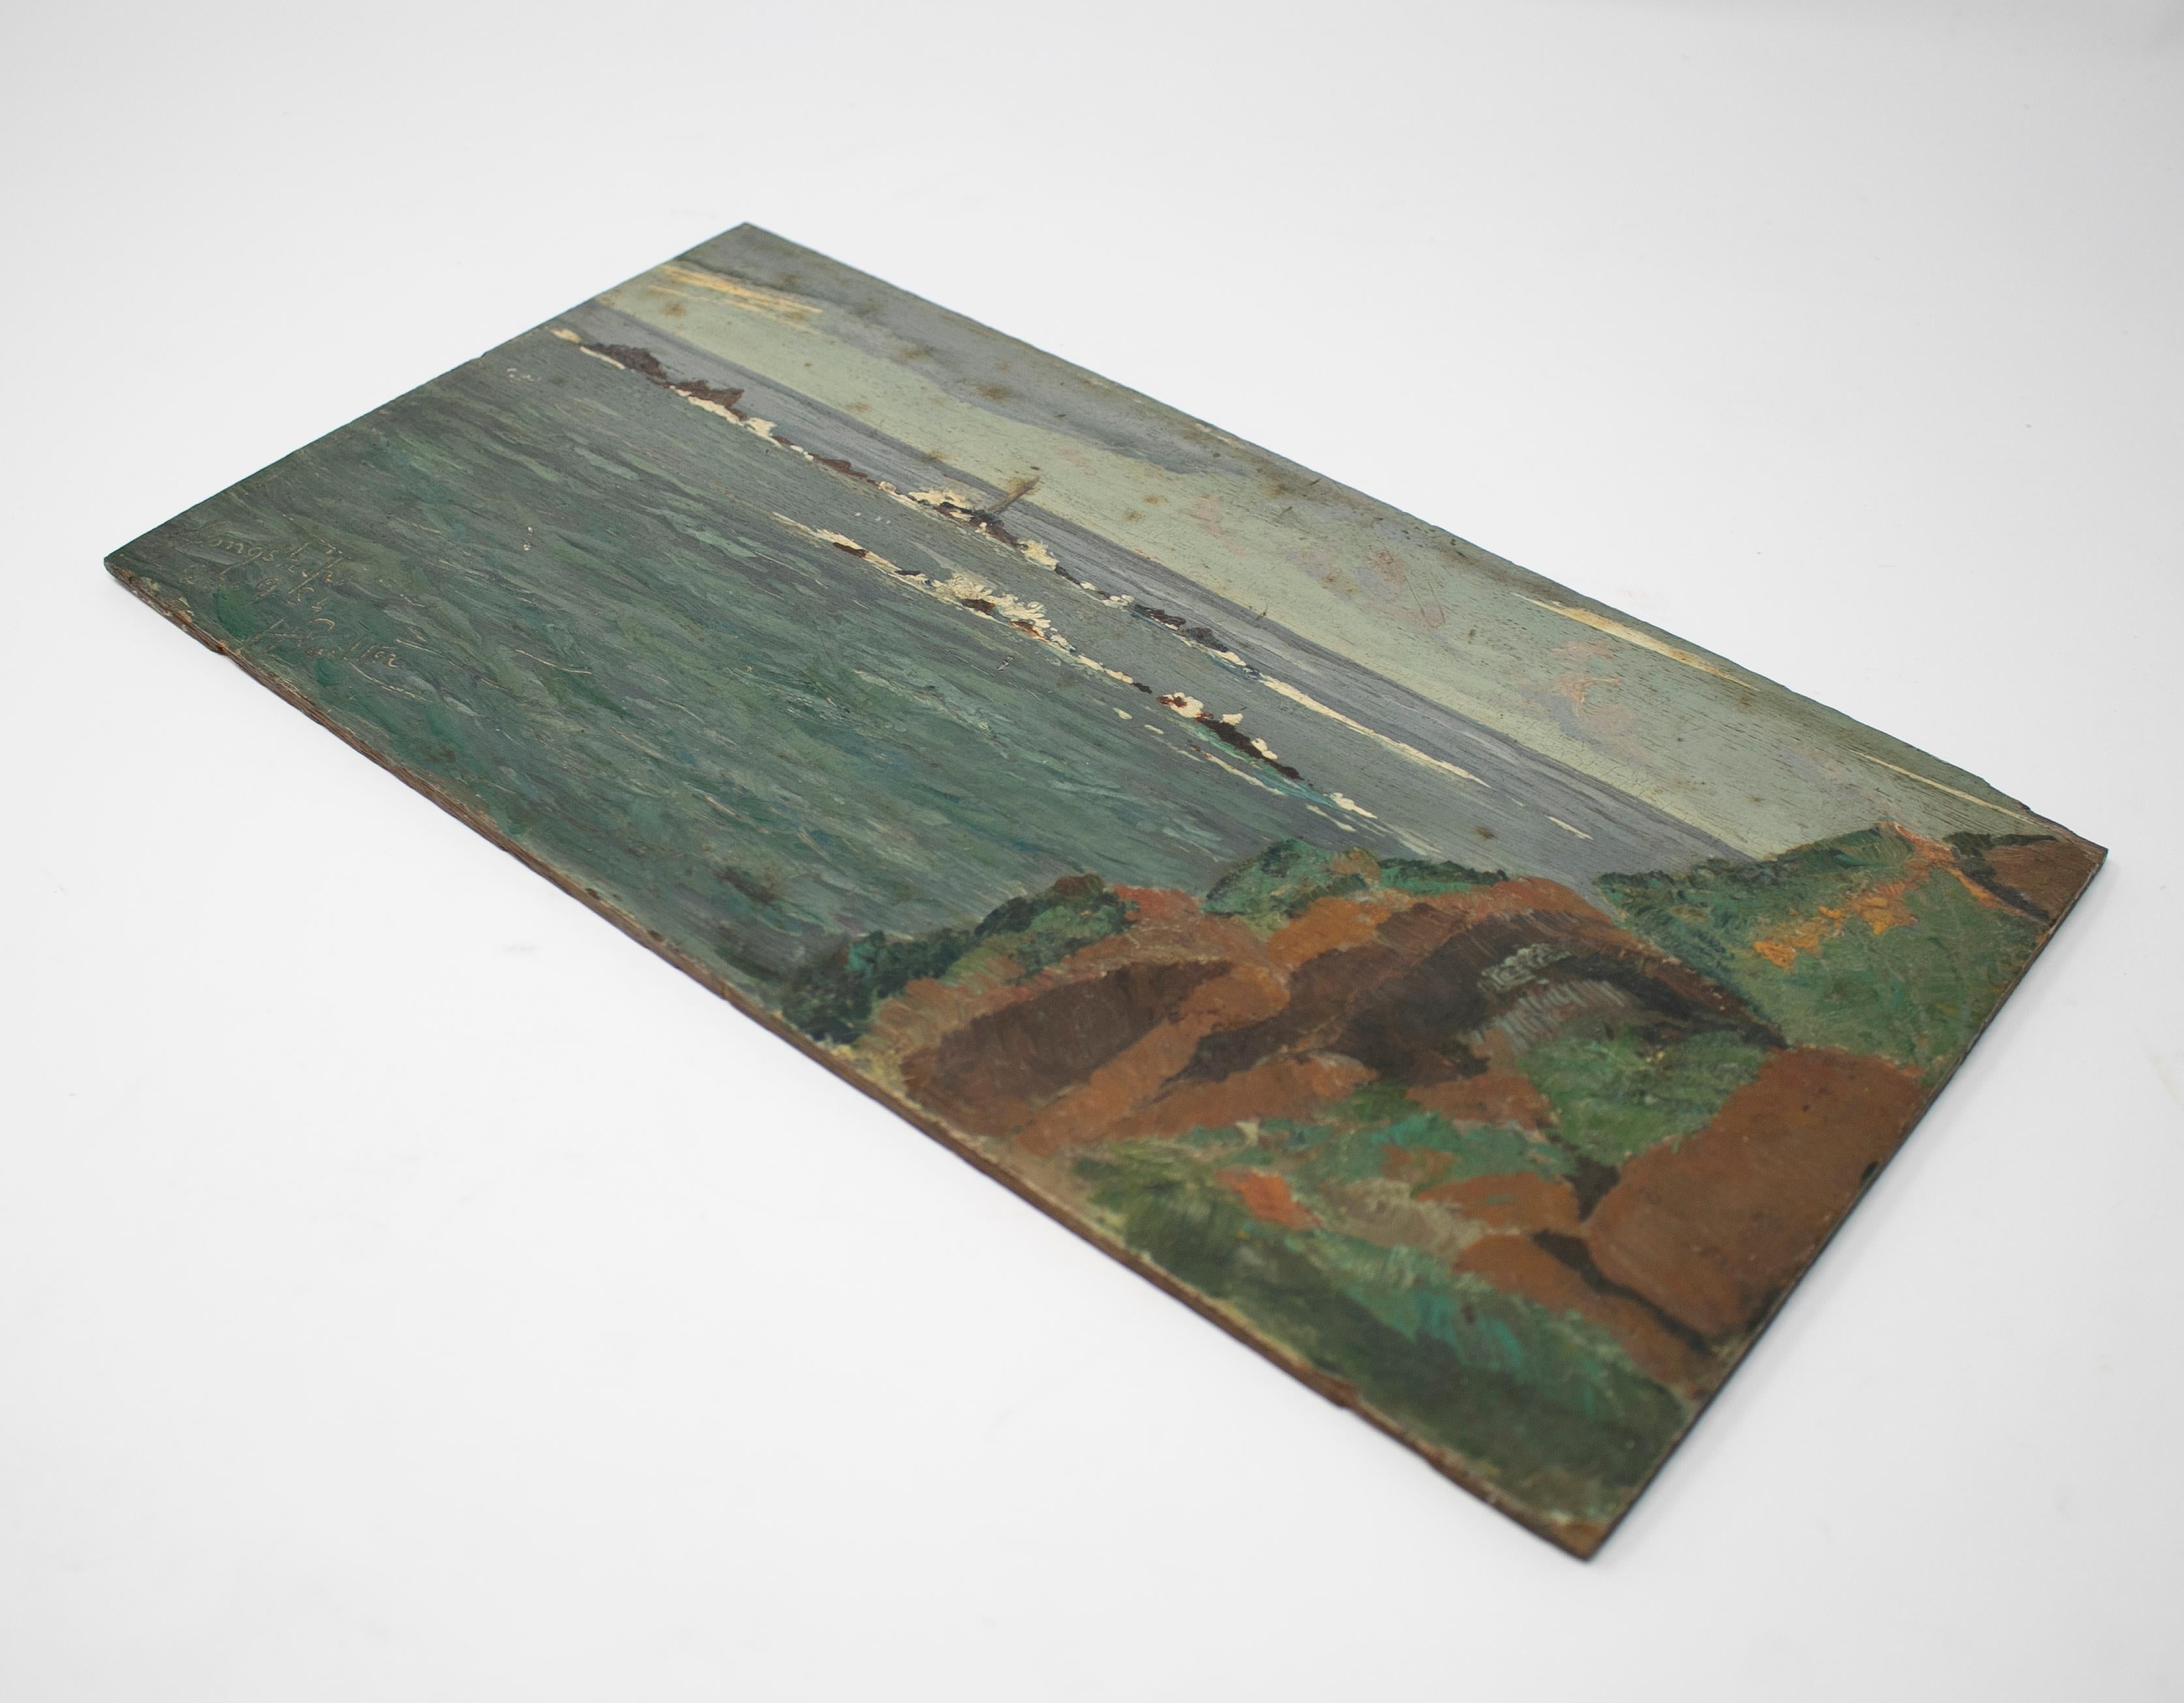 öl auf Holz, 19. Jahrhundert, Gemälde einer Meereslandschaft. 

Unterschrieben.